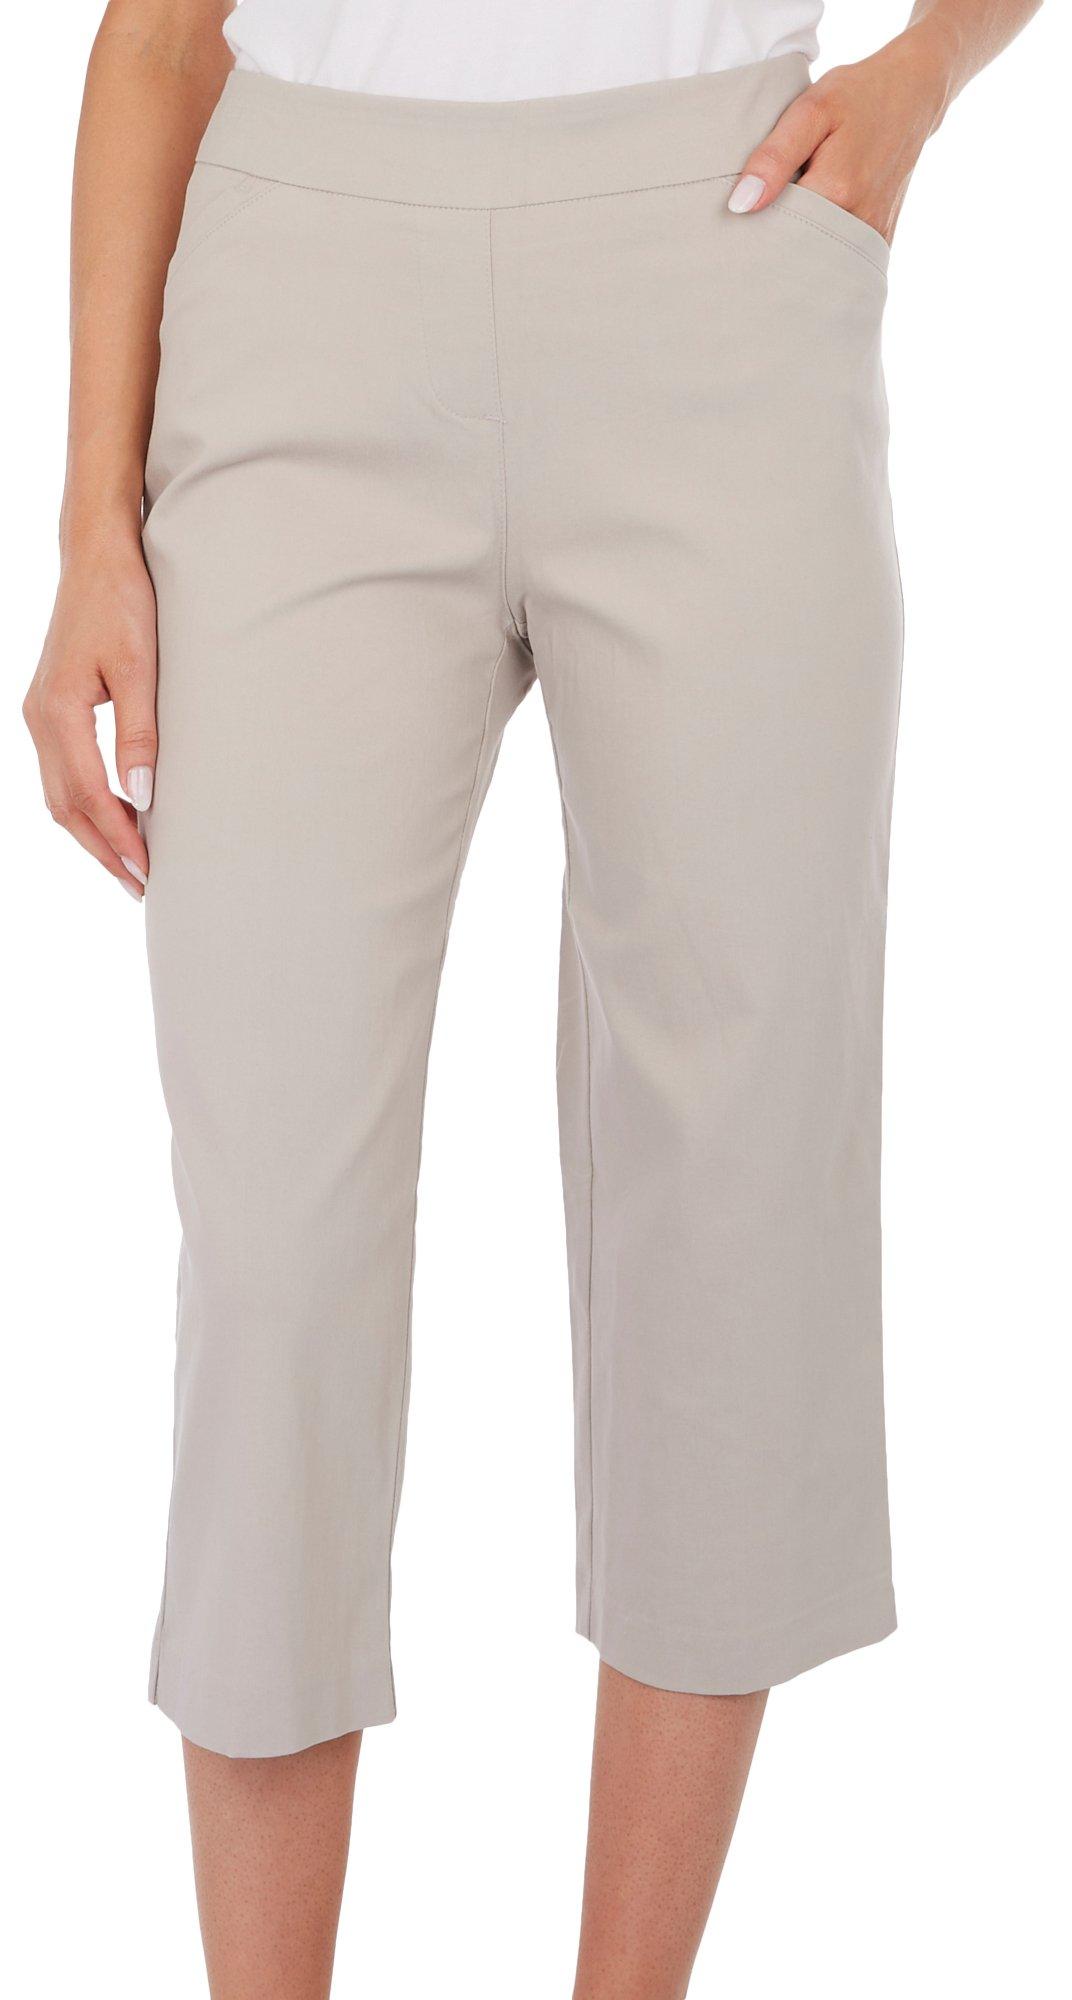 Est 1946, Pants & Jumpsuits, Est 946 Tan Womens Capri Pants Size 12